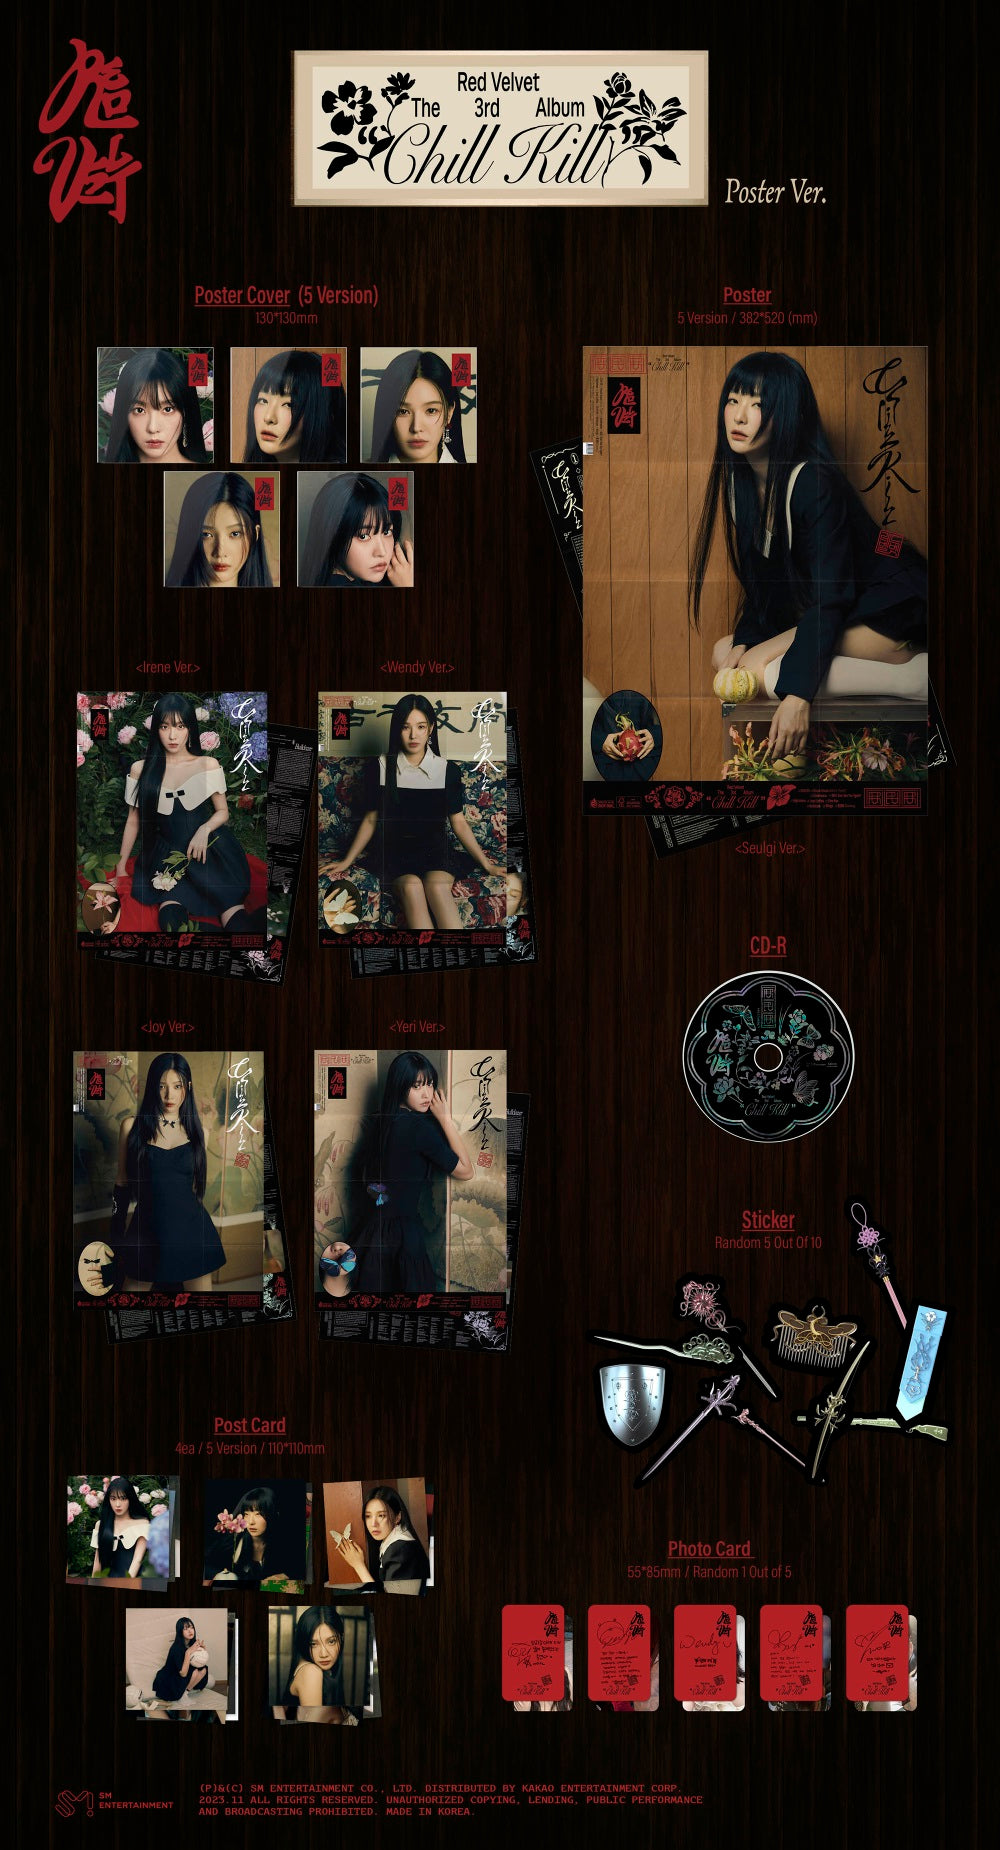 Red Velvet - Chill Kill (Poster ver.)